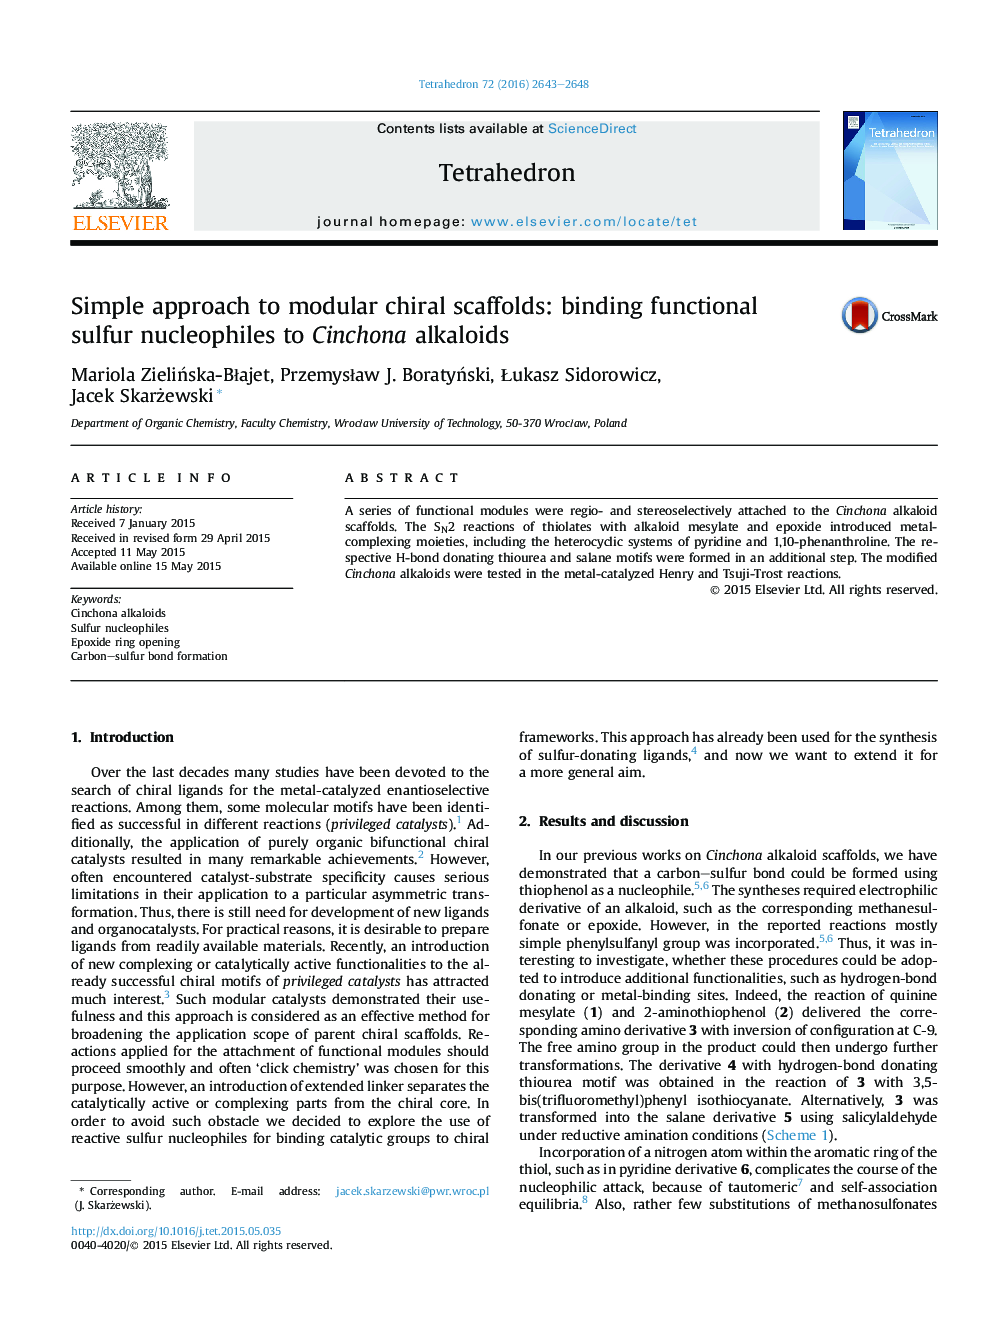 رویکرد ساده به داربست های مدولار کیرال: اتصال نوکلئوفیل های سولفور عملکردی به آلکالوئیدهای سینچونا 